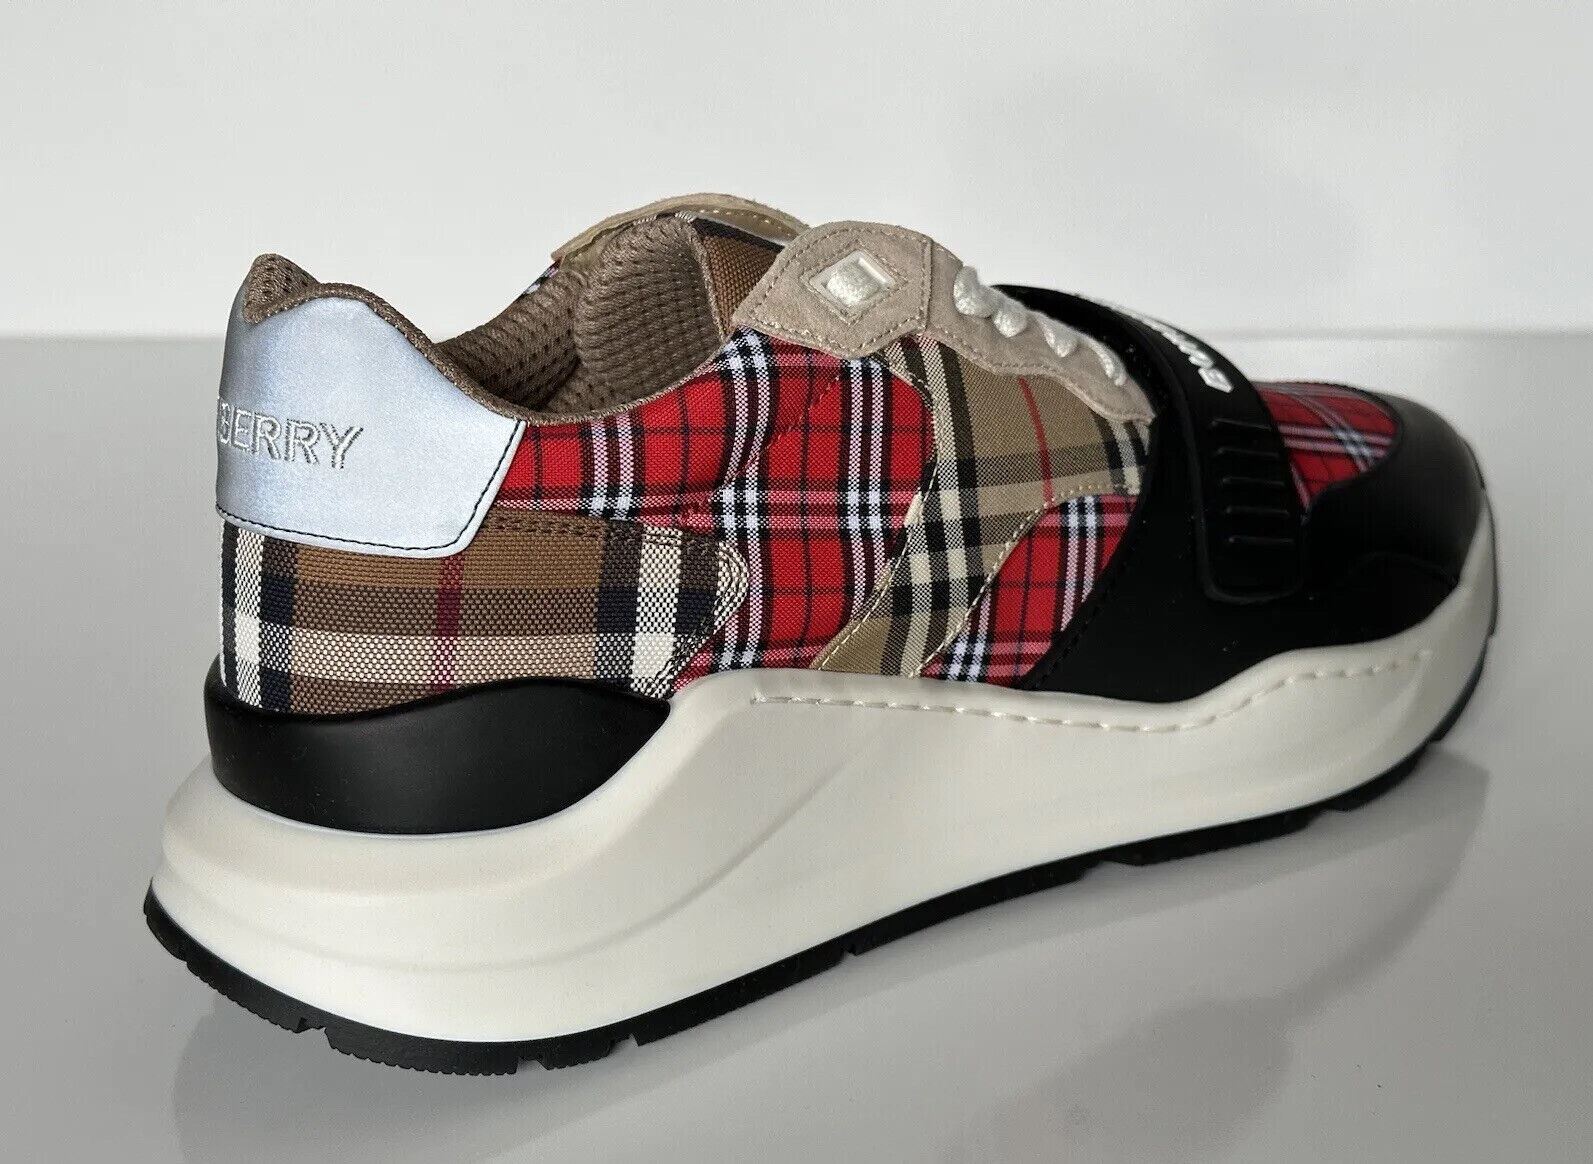 Мужские разноцветные кроссовки Ramsey Burberry 790 долларов США 13 США (46 евро) 8048632 Италия 